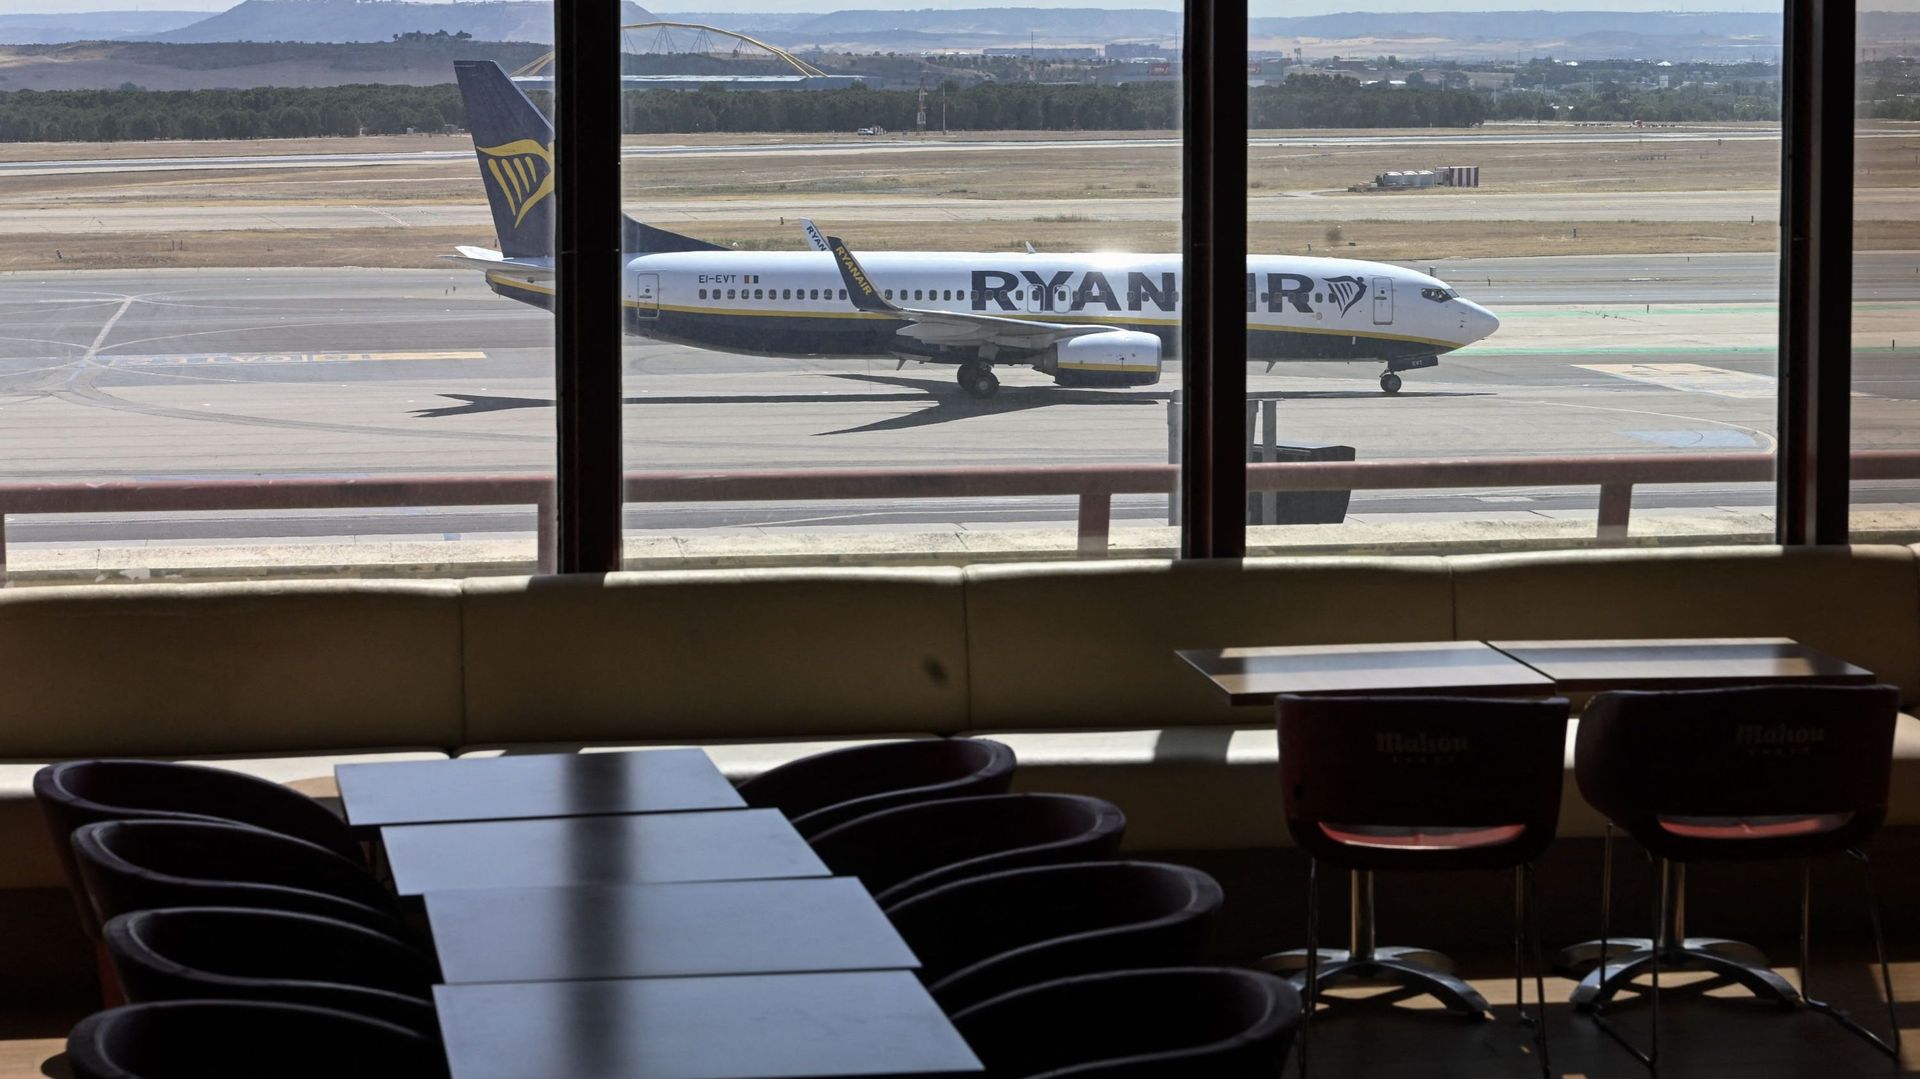 Cette photo montre un avion Boing 737-8AS de la compagnie aérienne irlandaise Ryanair pendant une grève à l'aéroport Adolfo Suarez Madrid Barajas, le 24 juin 2022.